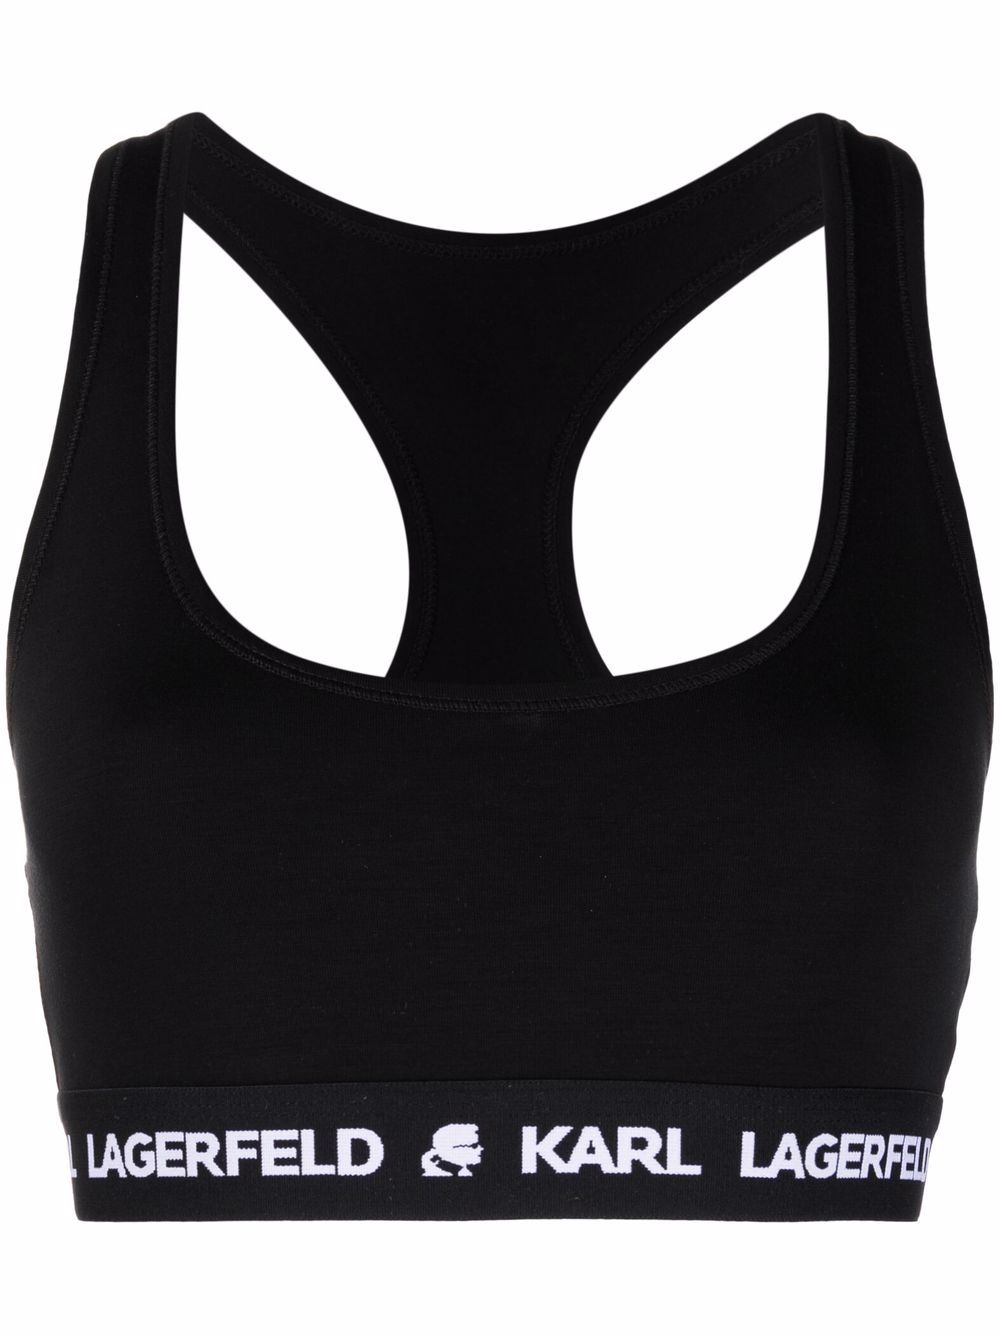 Karl Lagerfeld logo-underband bra - Black von Karl Lagerfeld